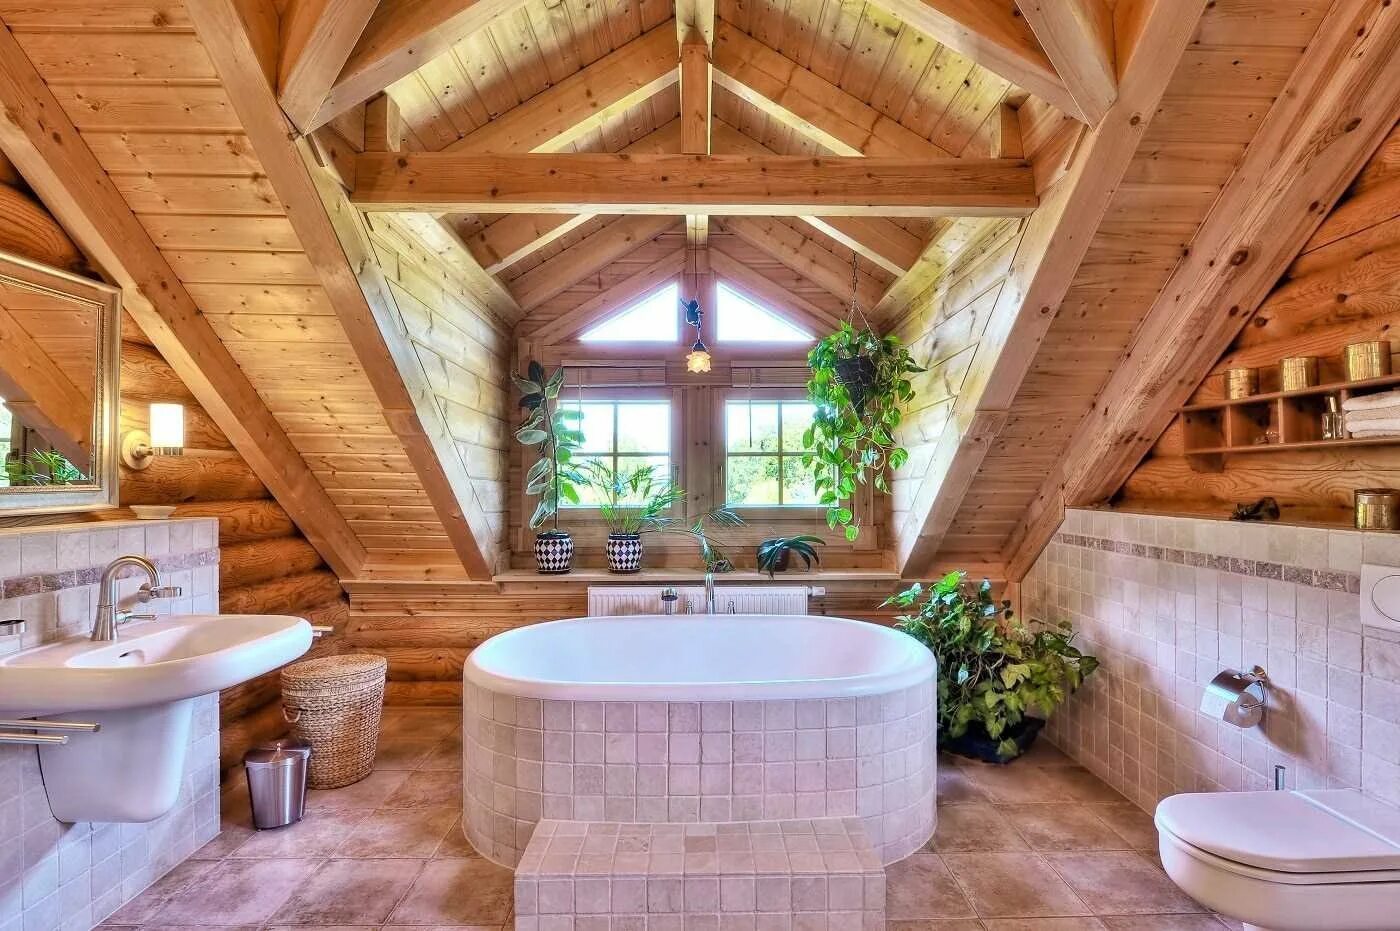 Ванная в деревянном доме. Ванная комната в деревянном доме. Ваееая в деревянном доме. Санузел в деревянном доме.